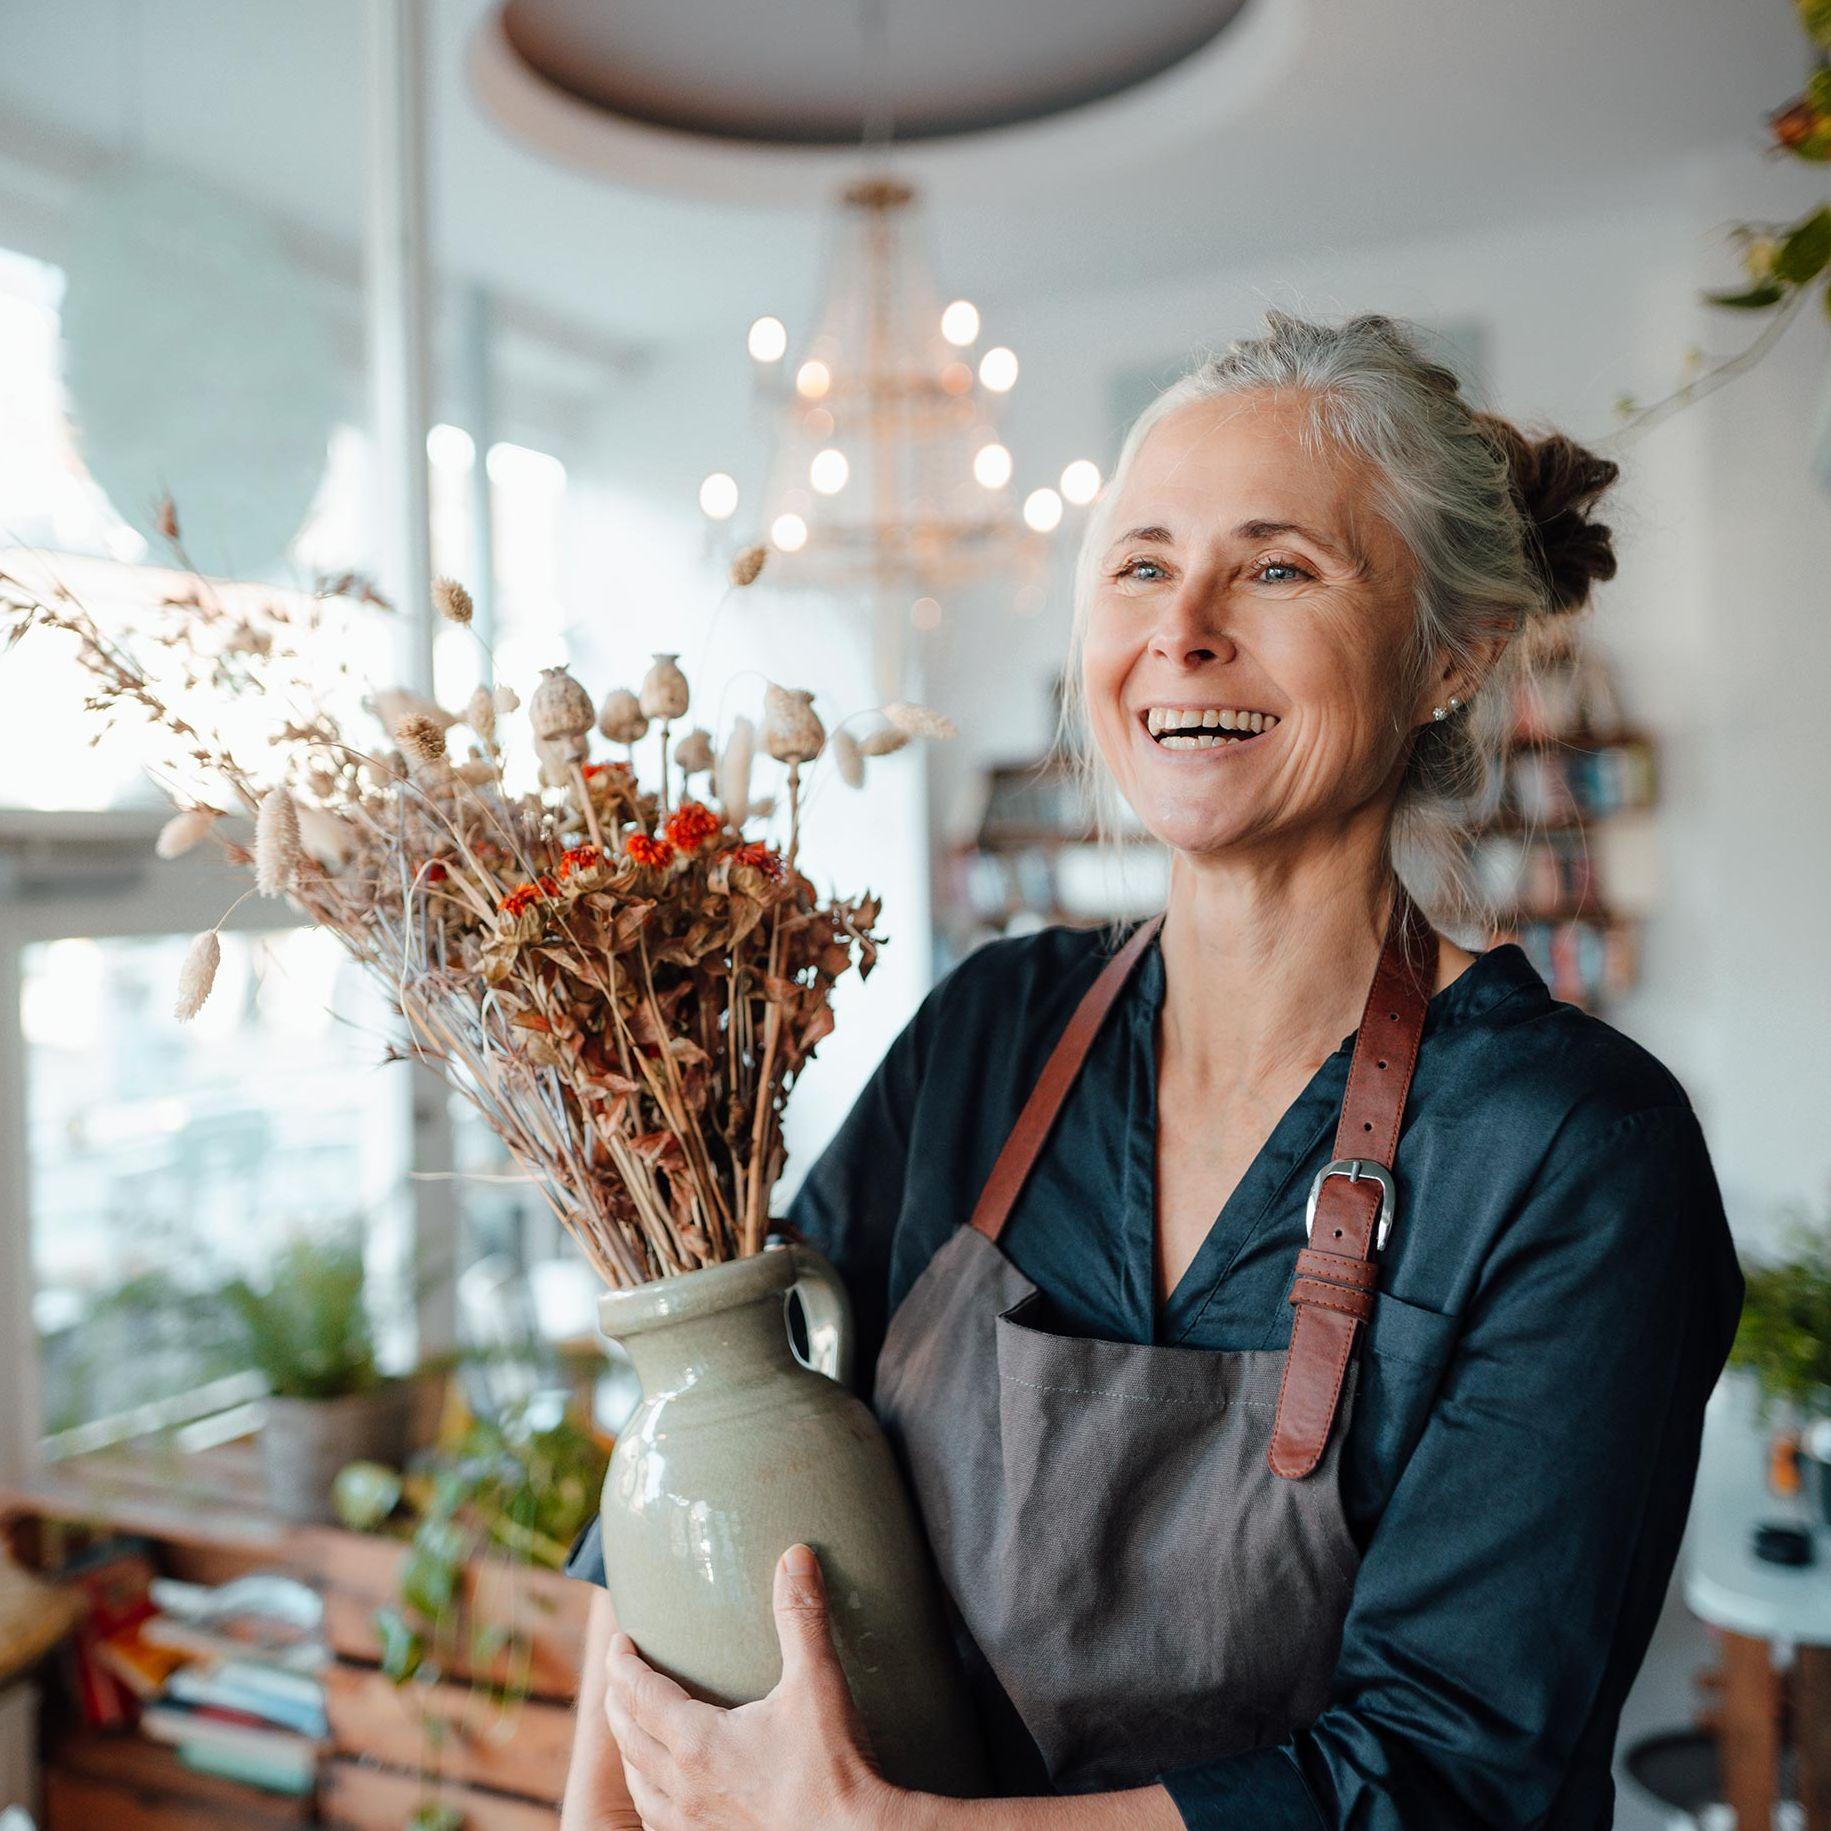 Eine ältere Frau mit Schürze und grauen Haaren steht in einem schönen und lichtdurchfluteten Blumenladen. Sie lacht ausgelassen und hat eine Vase mit einem Blumengesteck in der Hand.